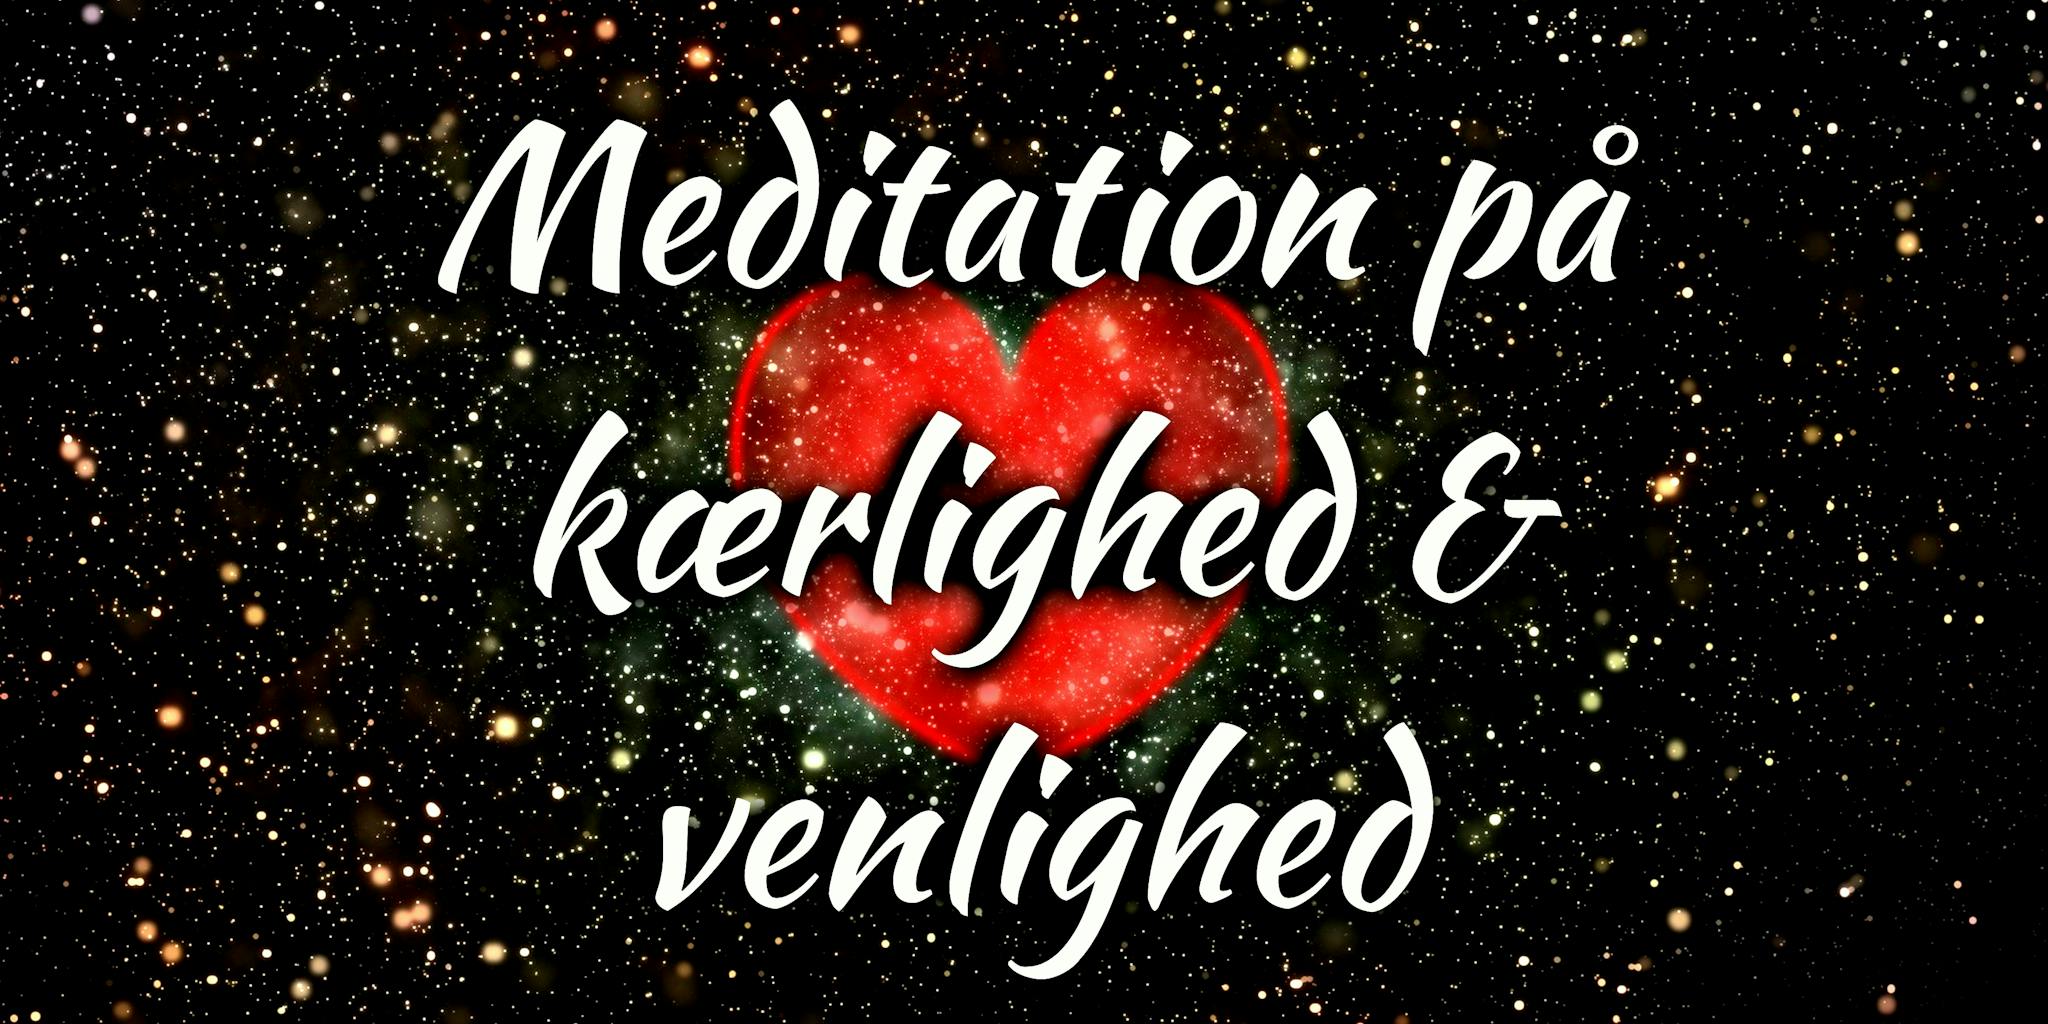 Meditation på kærlighed og venlighed